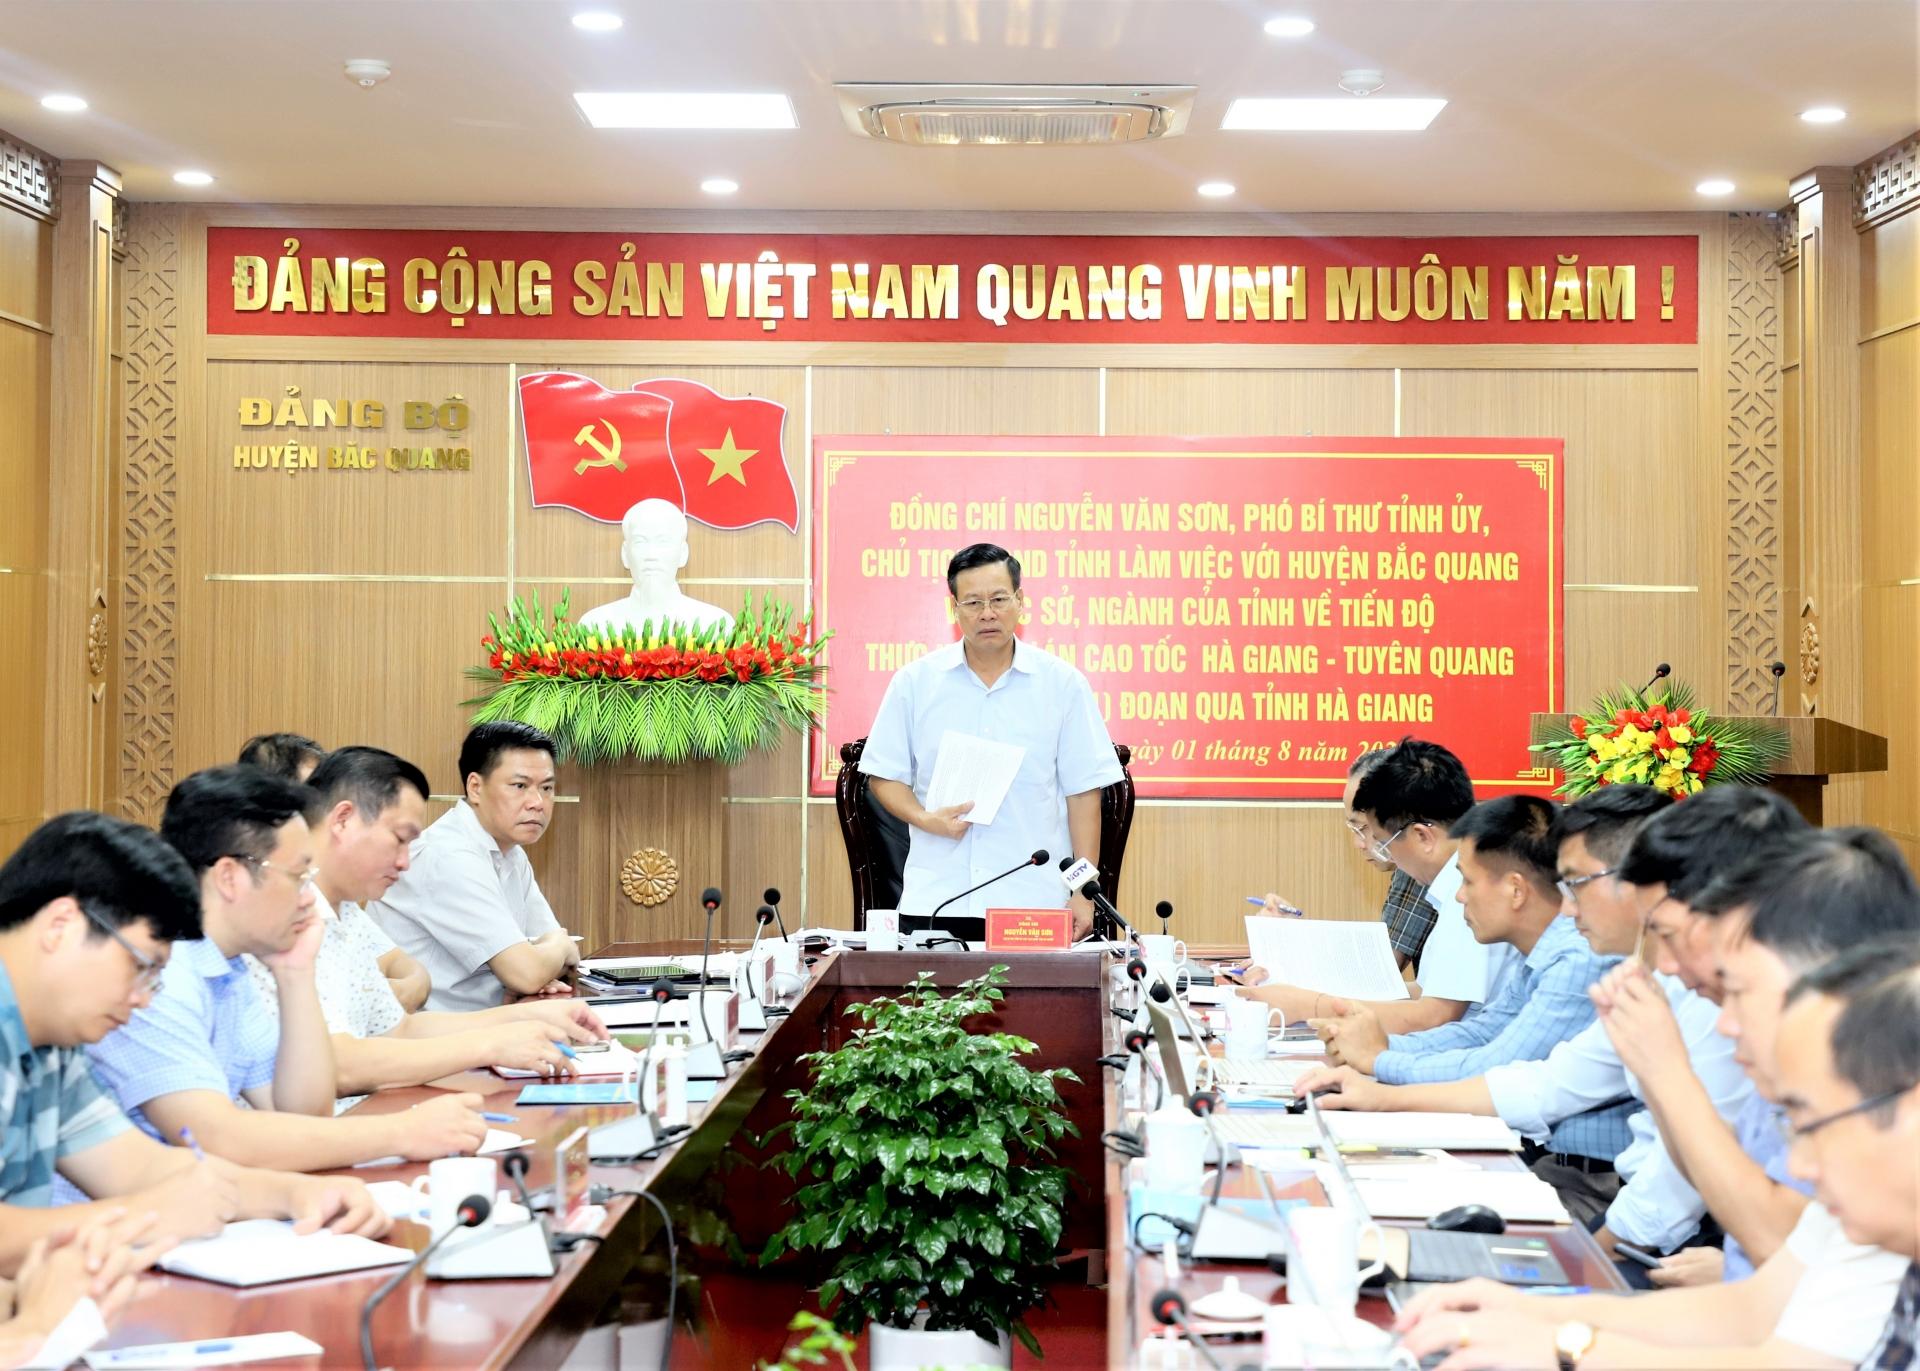 Chủ tịch UBND tỉnh Nguyễn Văn Sơn chủ trì buổi làm việc với các sở, ngành liên quan và huyện Bắc Quang về tiến độ dự án đường cao tốc Tuyên Quang - Hà Giang.